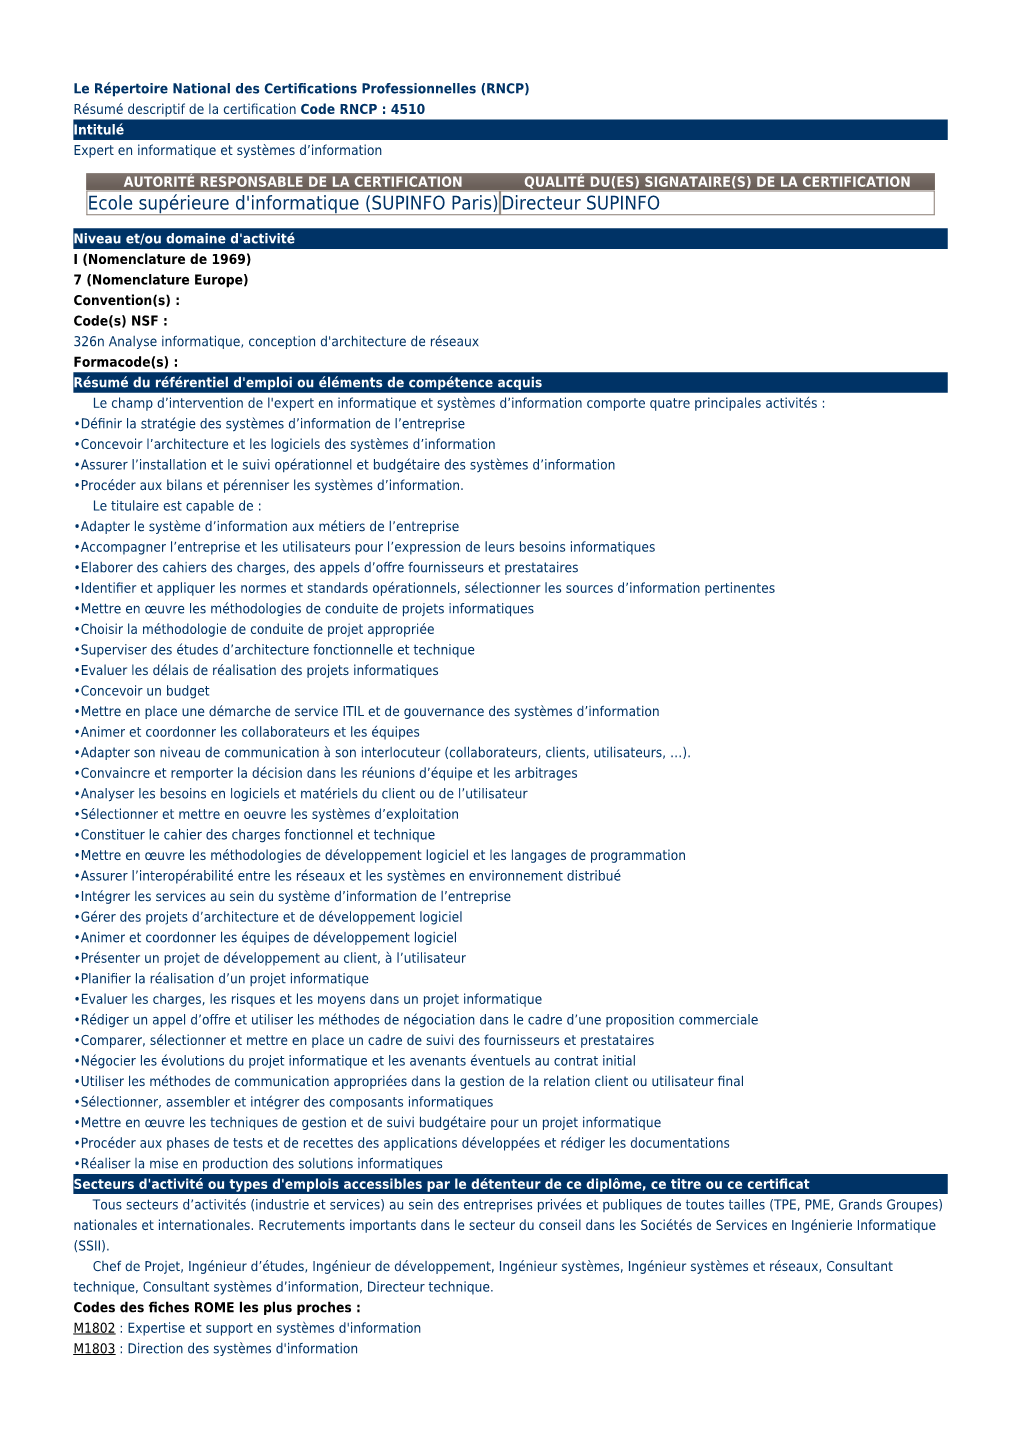 Le Répertoire National Des Certifications Professionnelles (RNCP) (Résumé Descriptif De La Certification)